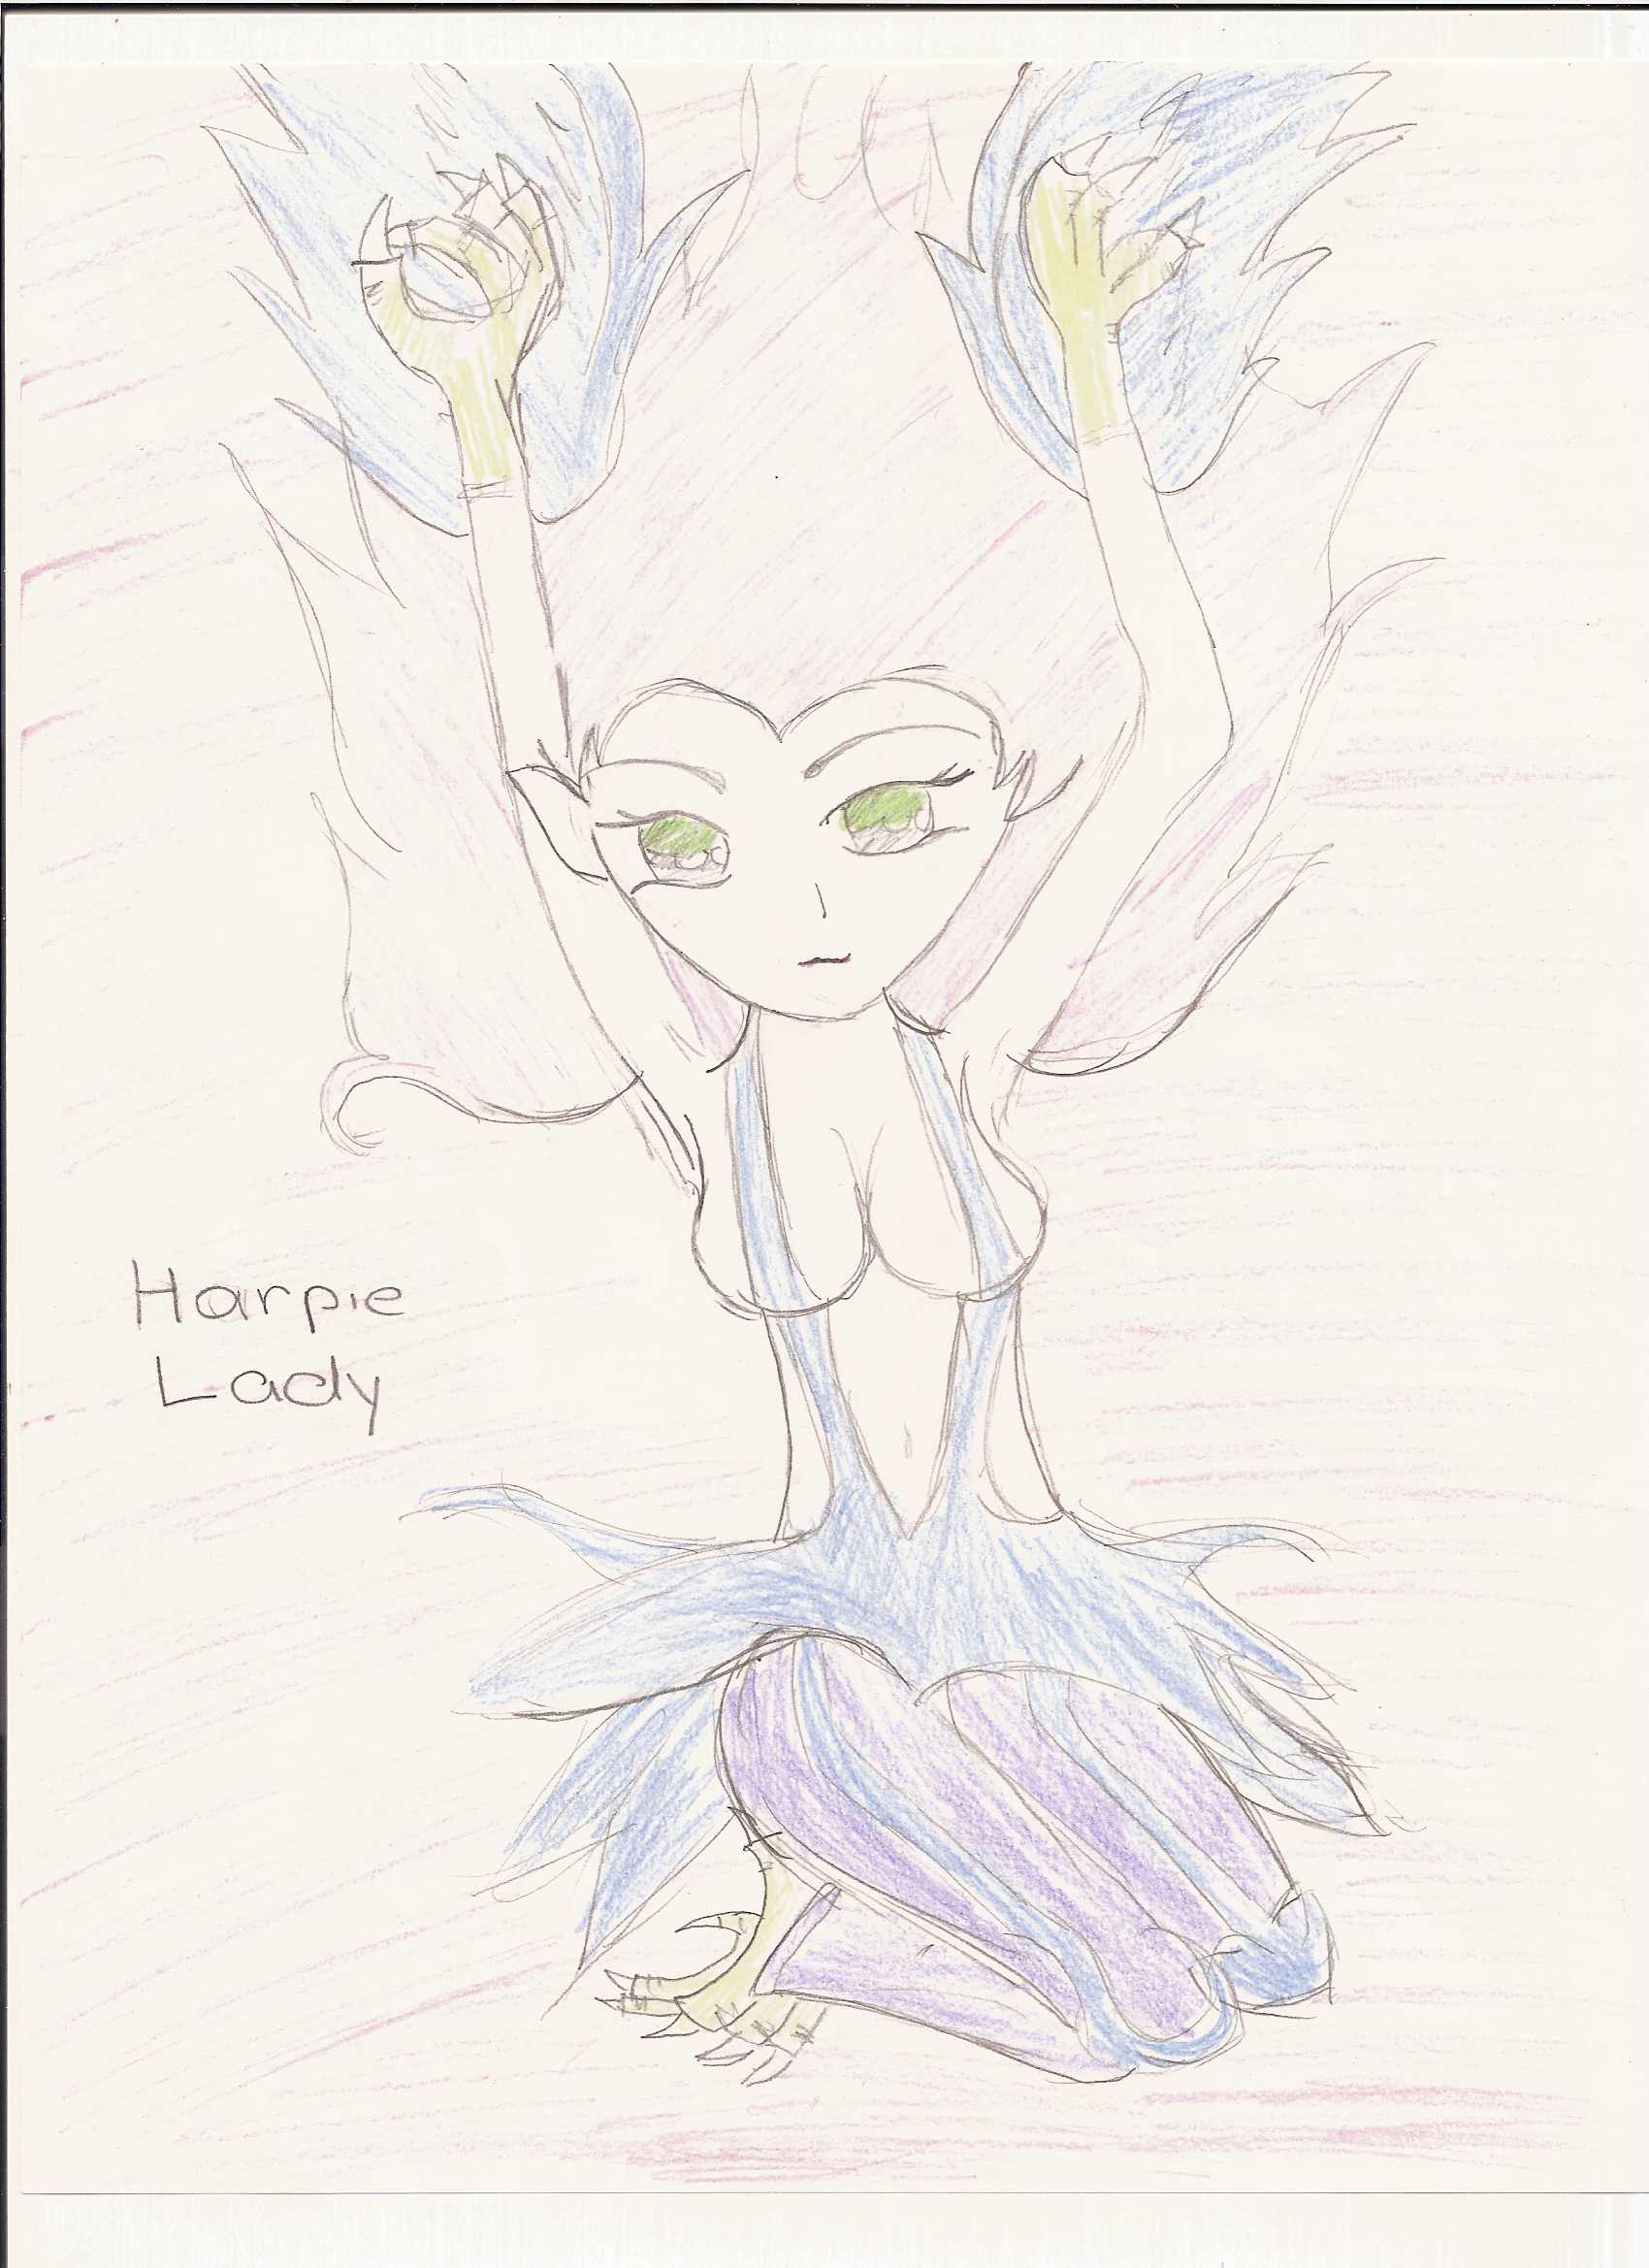 Harpie lady by Kimikoprincesspancho